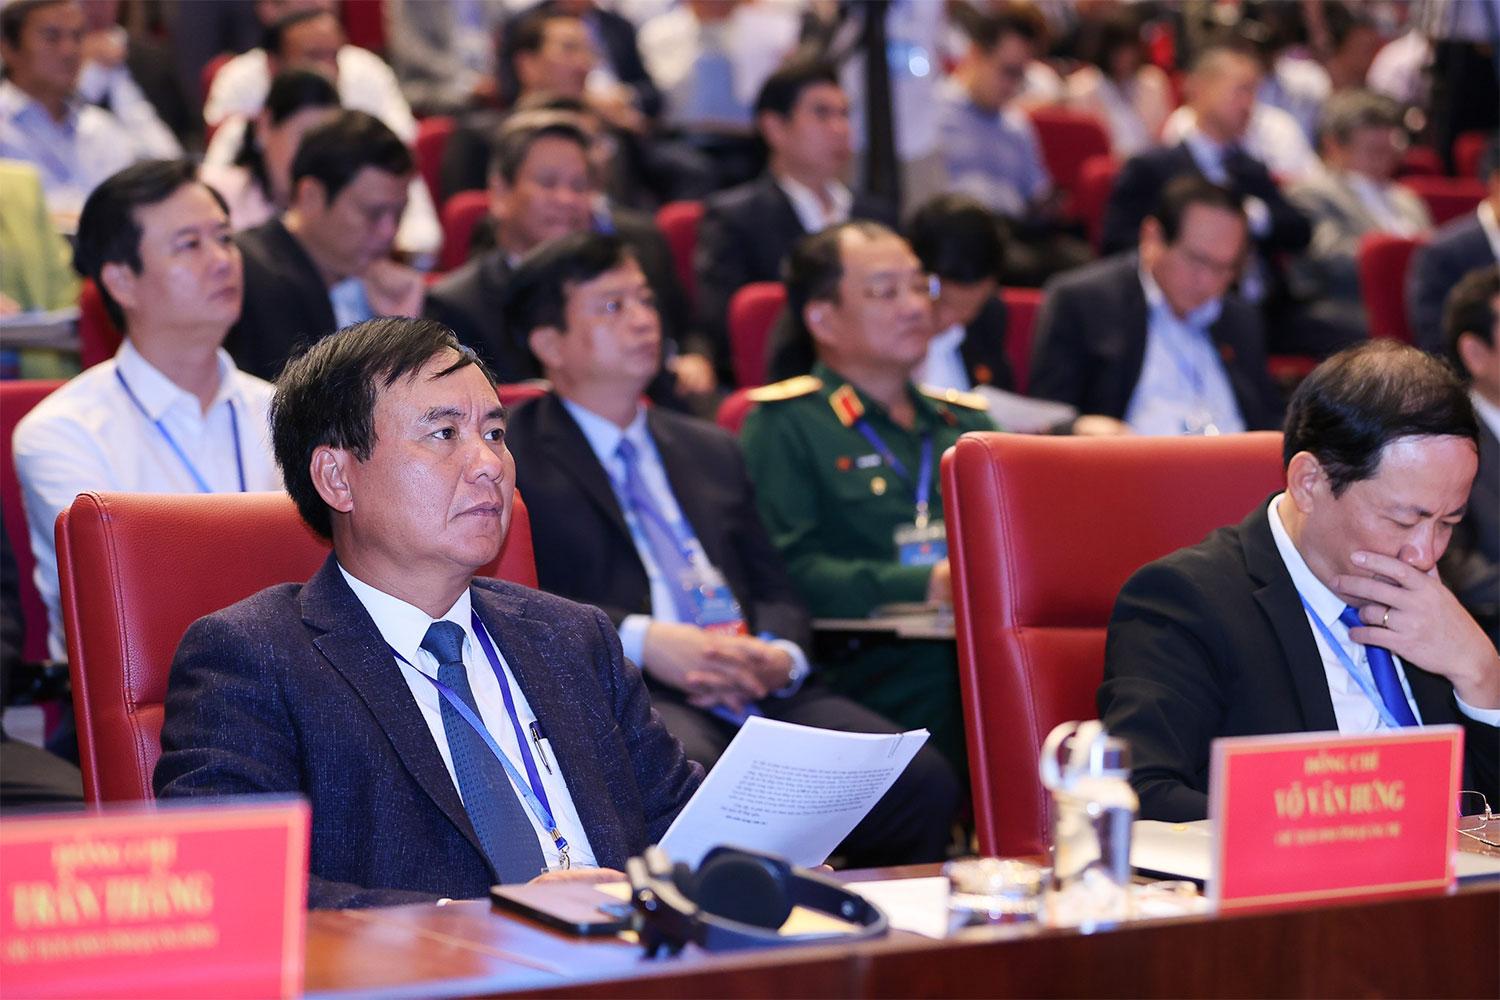 Chủ tịch UBND tỉnh Quảng Trị Võ Văn Hưng: "Hành lang Kinh tế Đông Tây - thành tố quan trọng thúc đẩy hợp tác phát triển kinh tế Vùng"